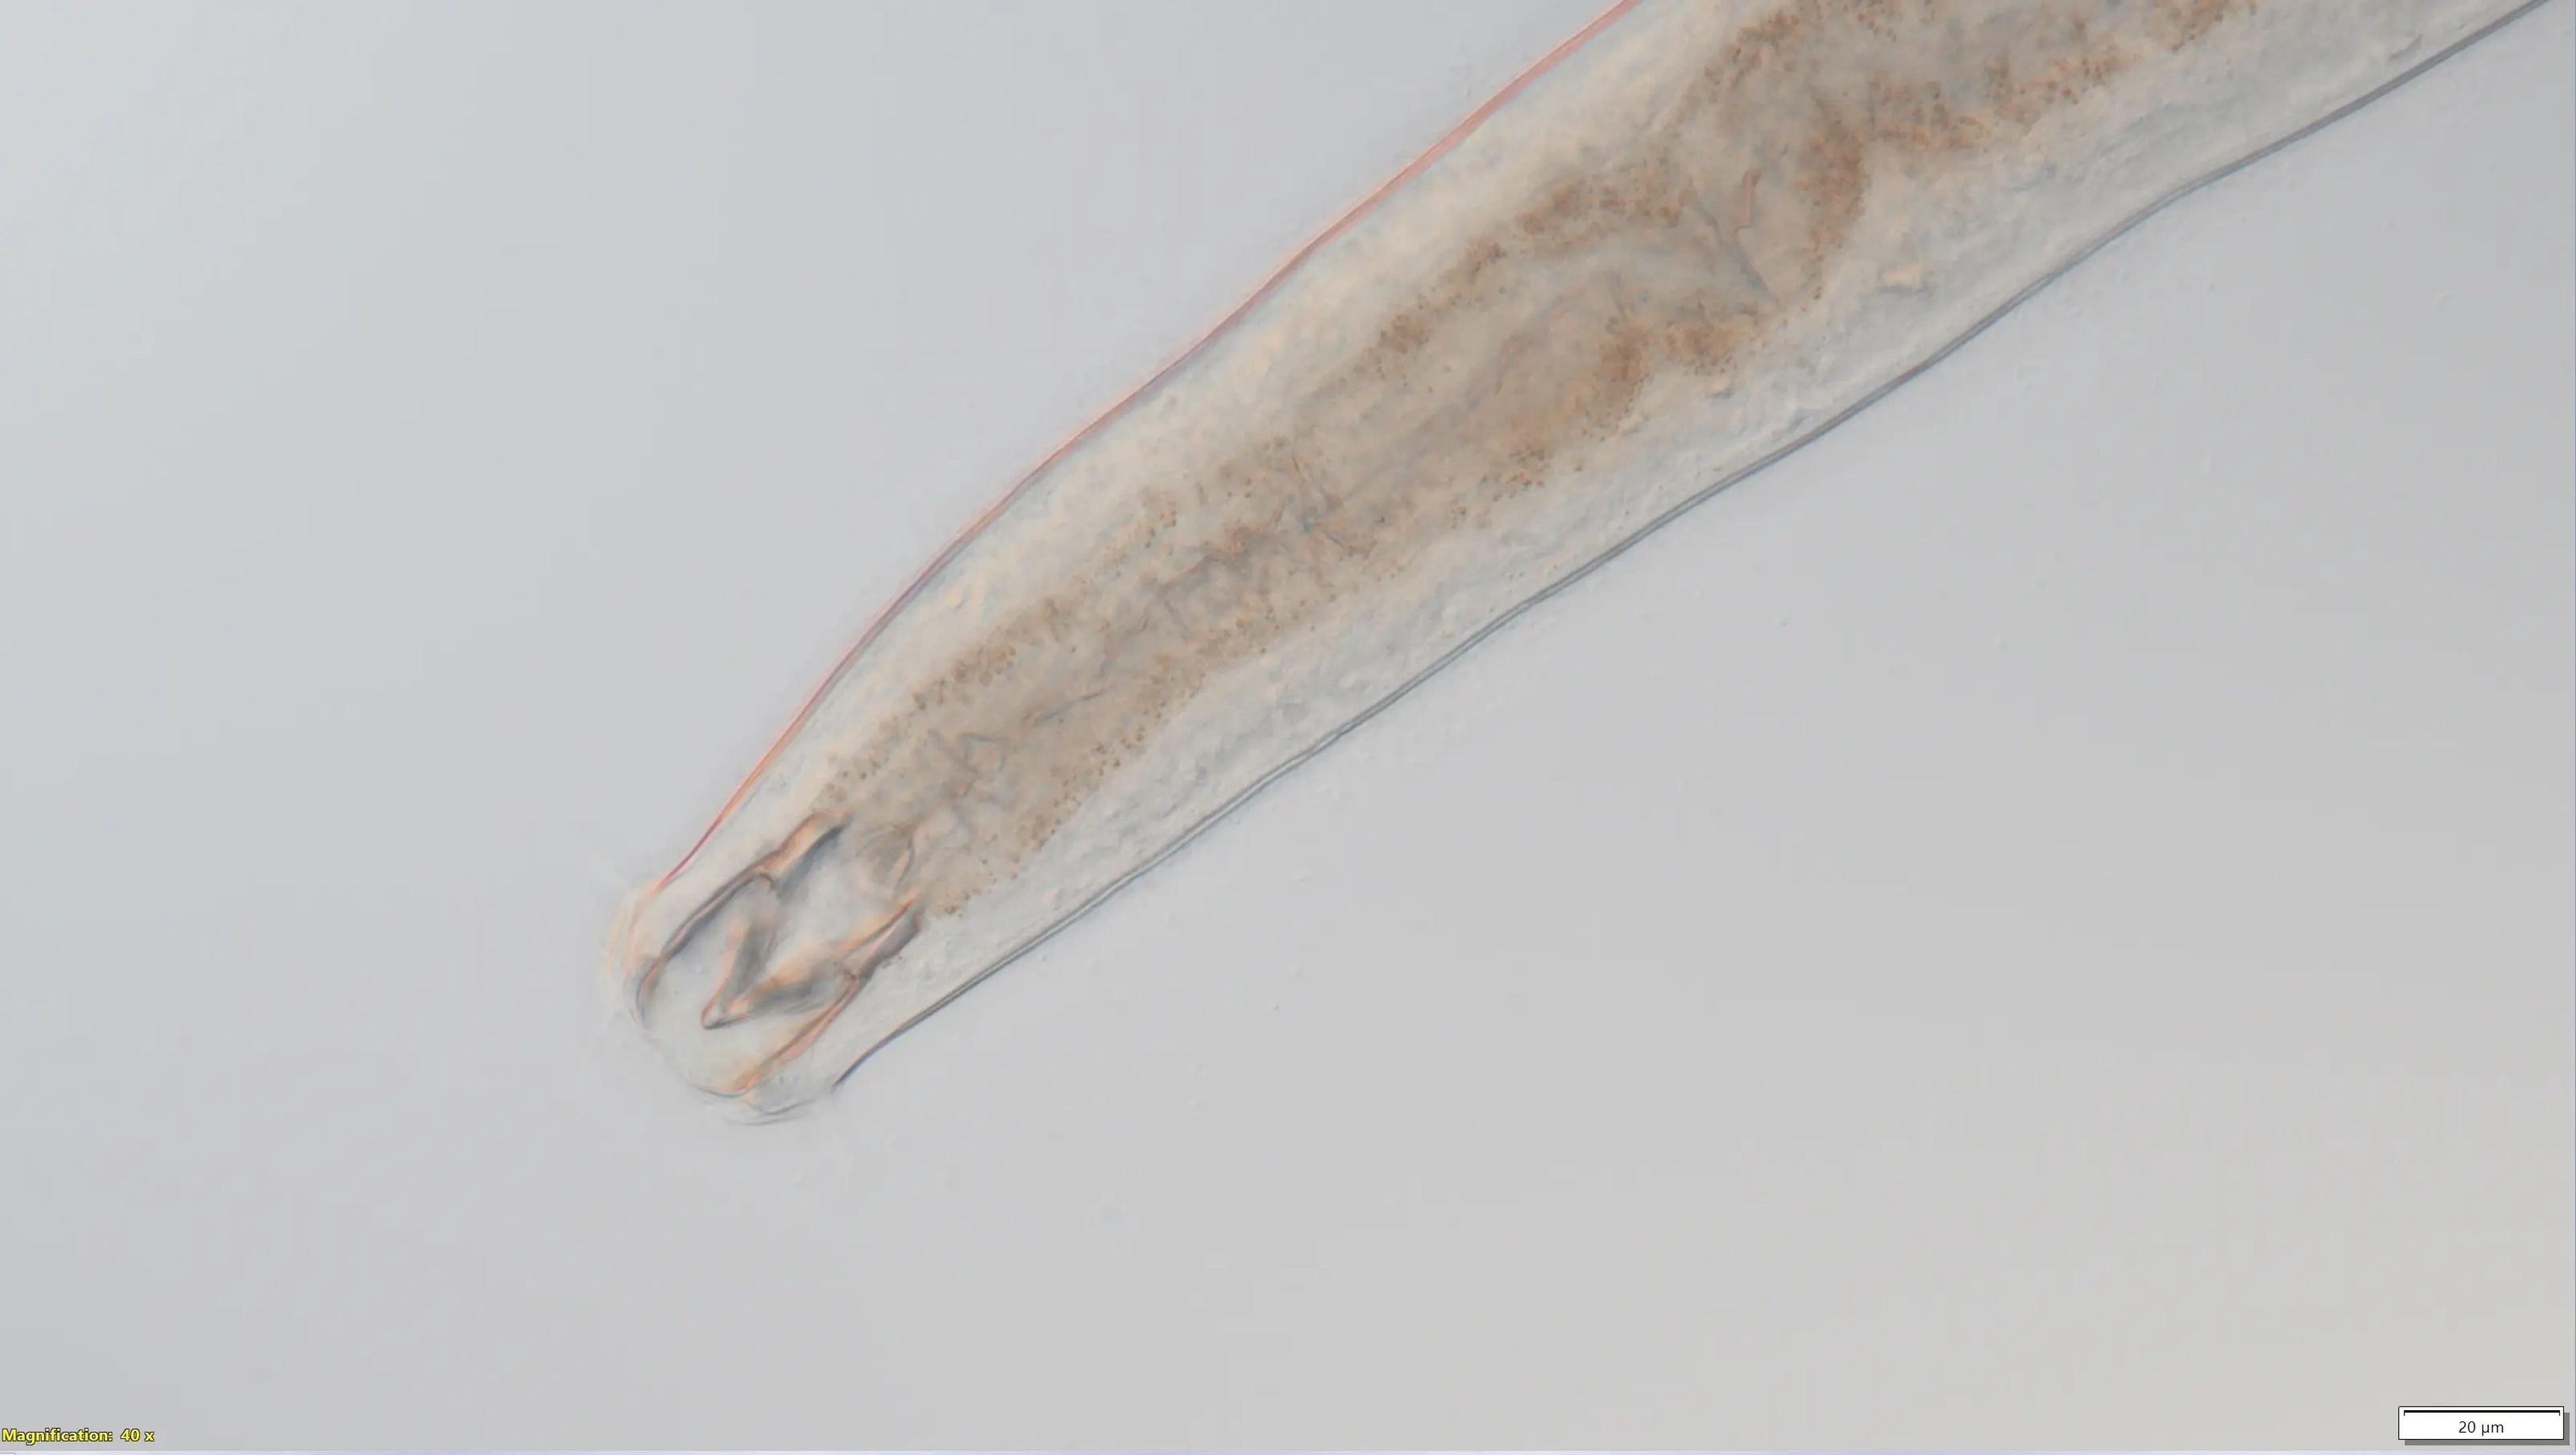 Estos nematodos Metoncholaimus tienen dientes que les ayudan a consumir presas.